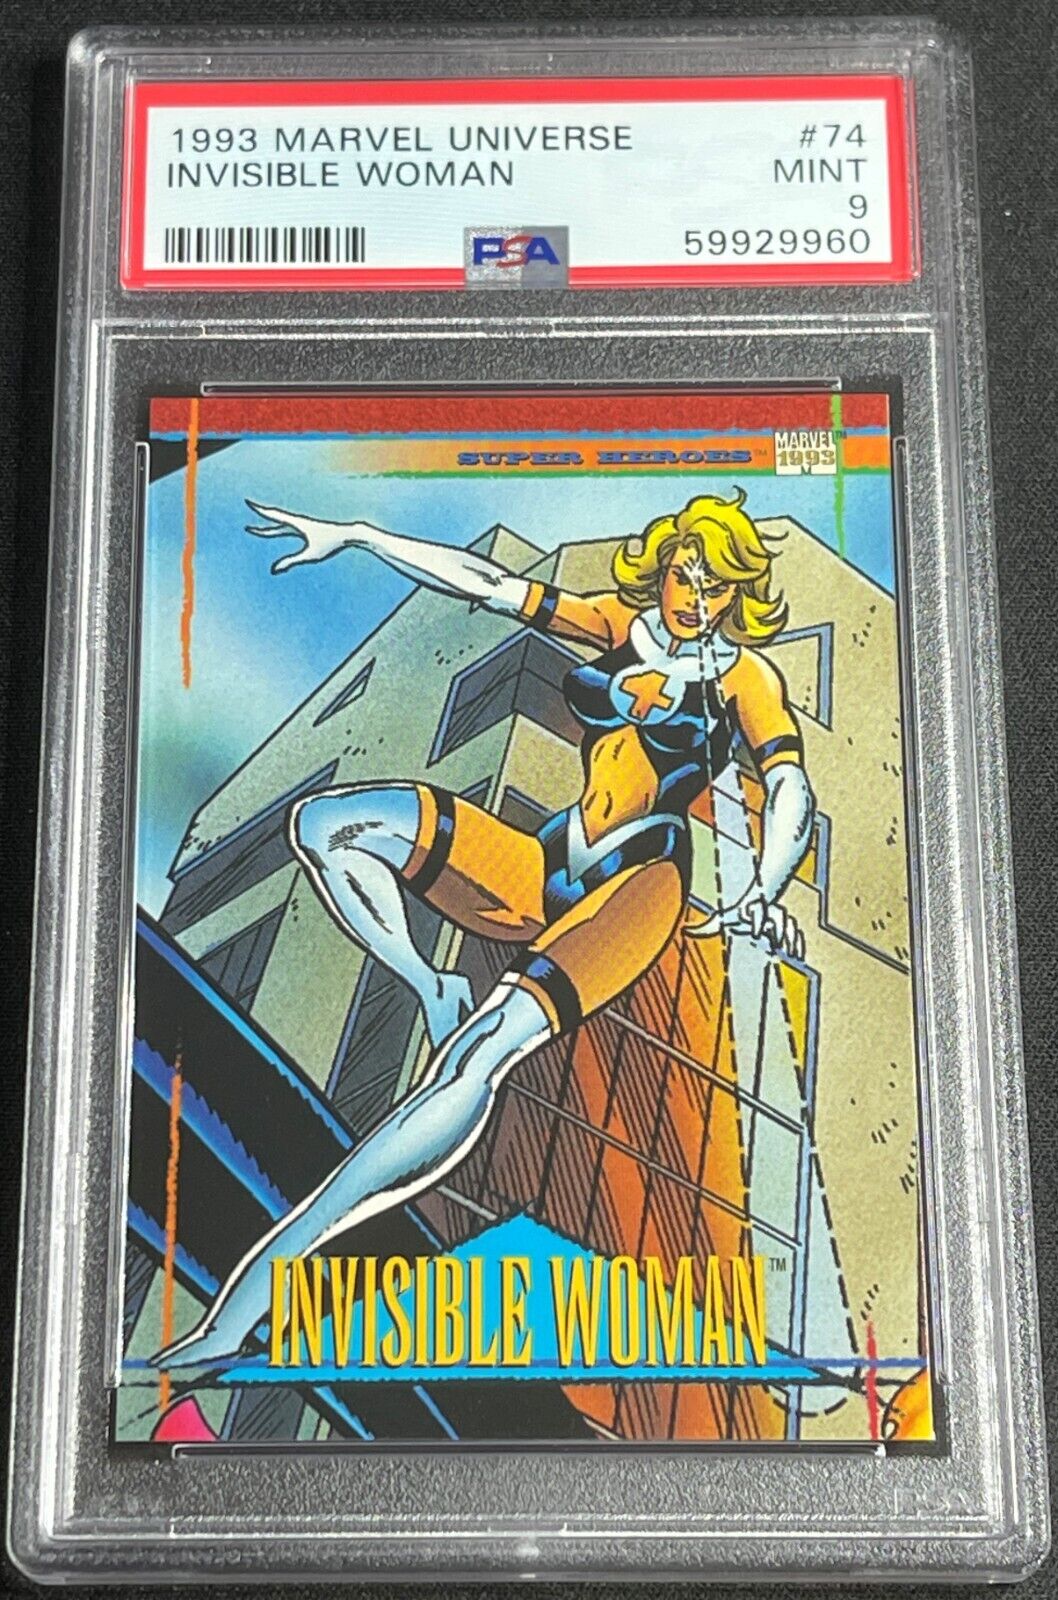 1993 Marvel Universe Invisible Woman #74 PSA 9 MINT MCU Fantastic Four